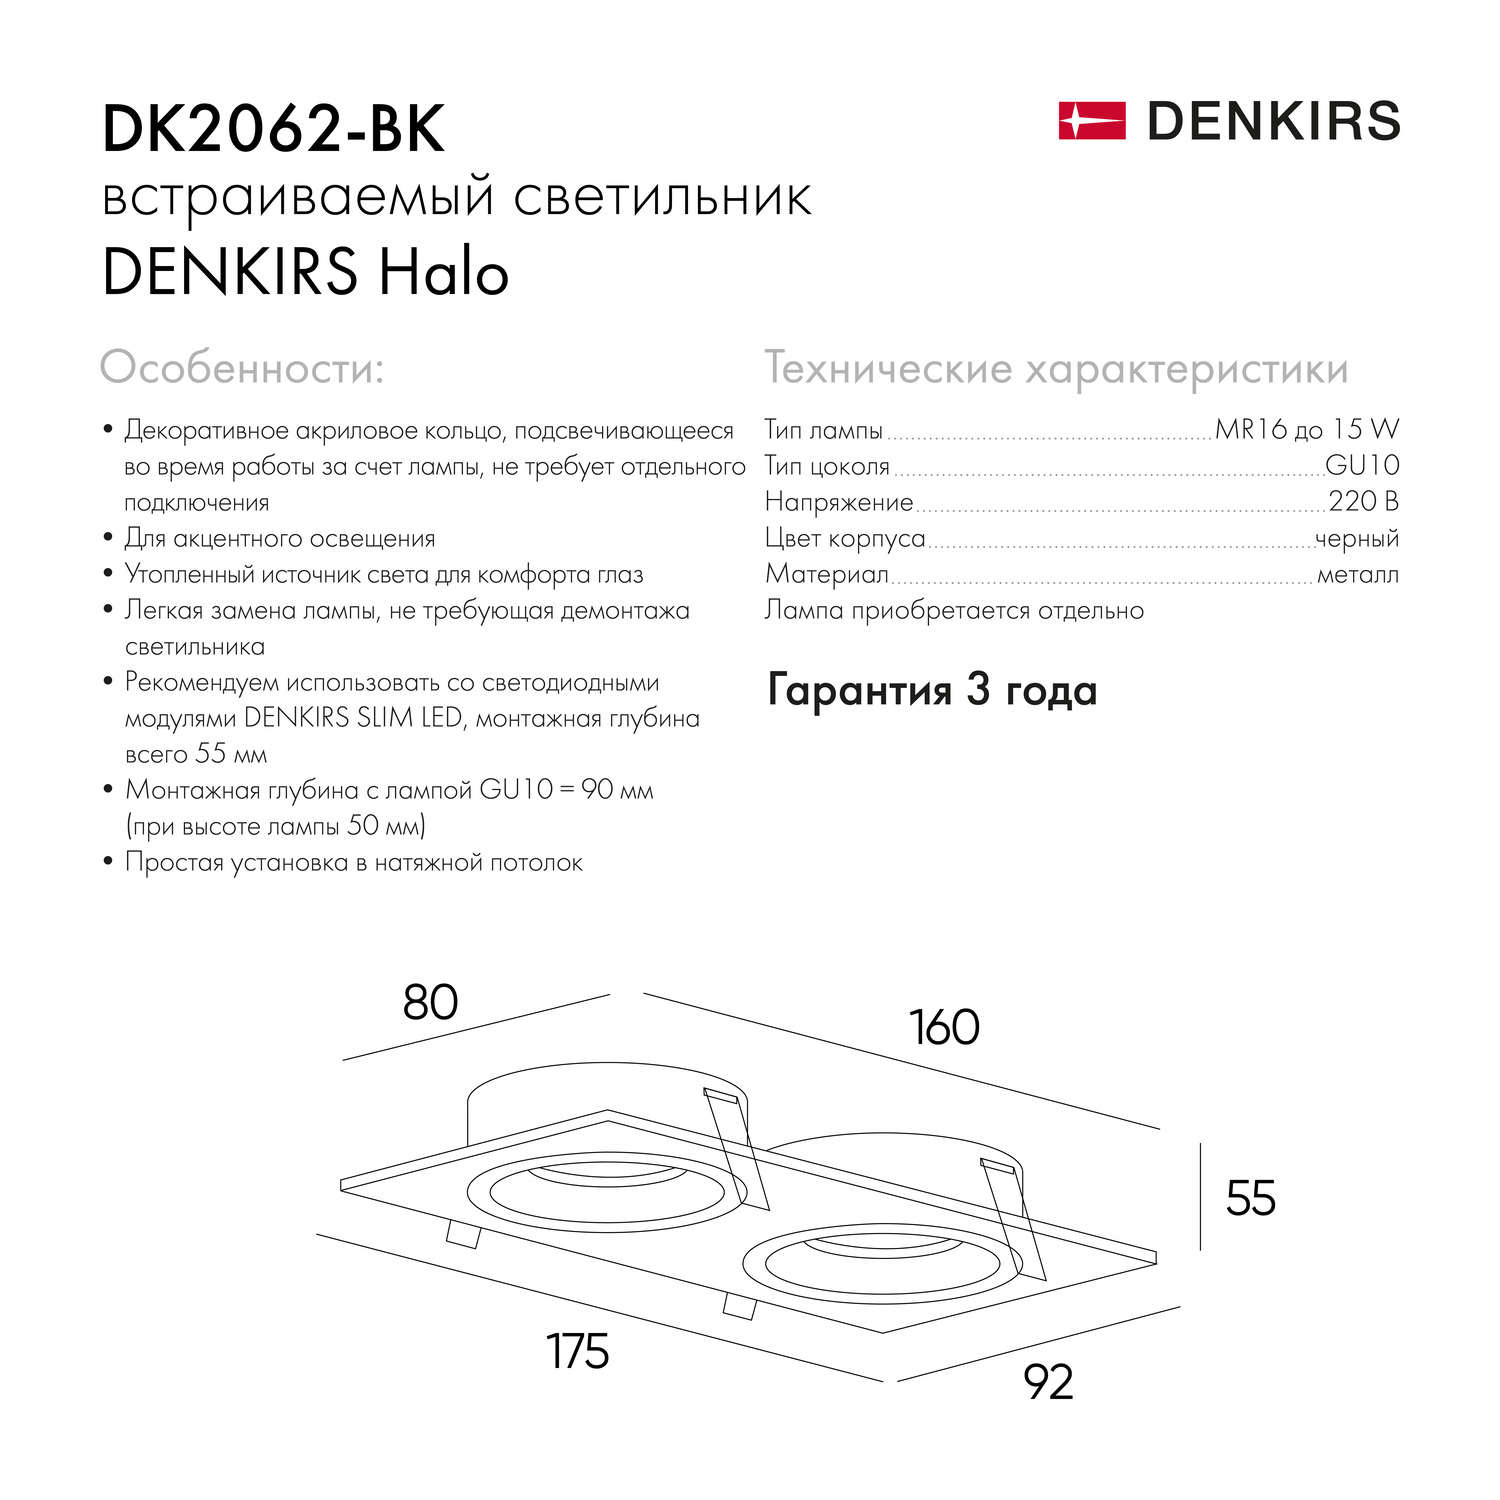 DK2062-BK